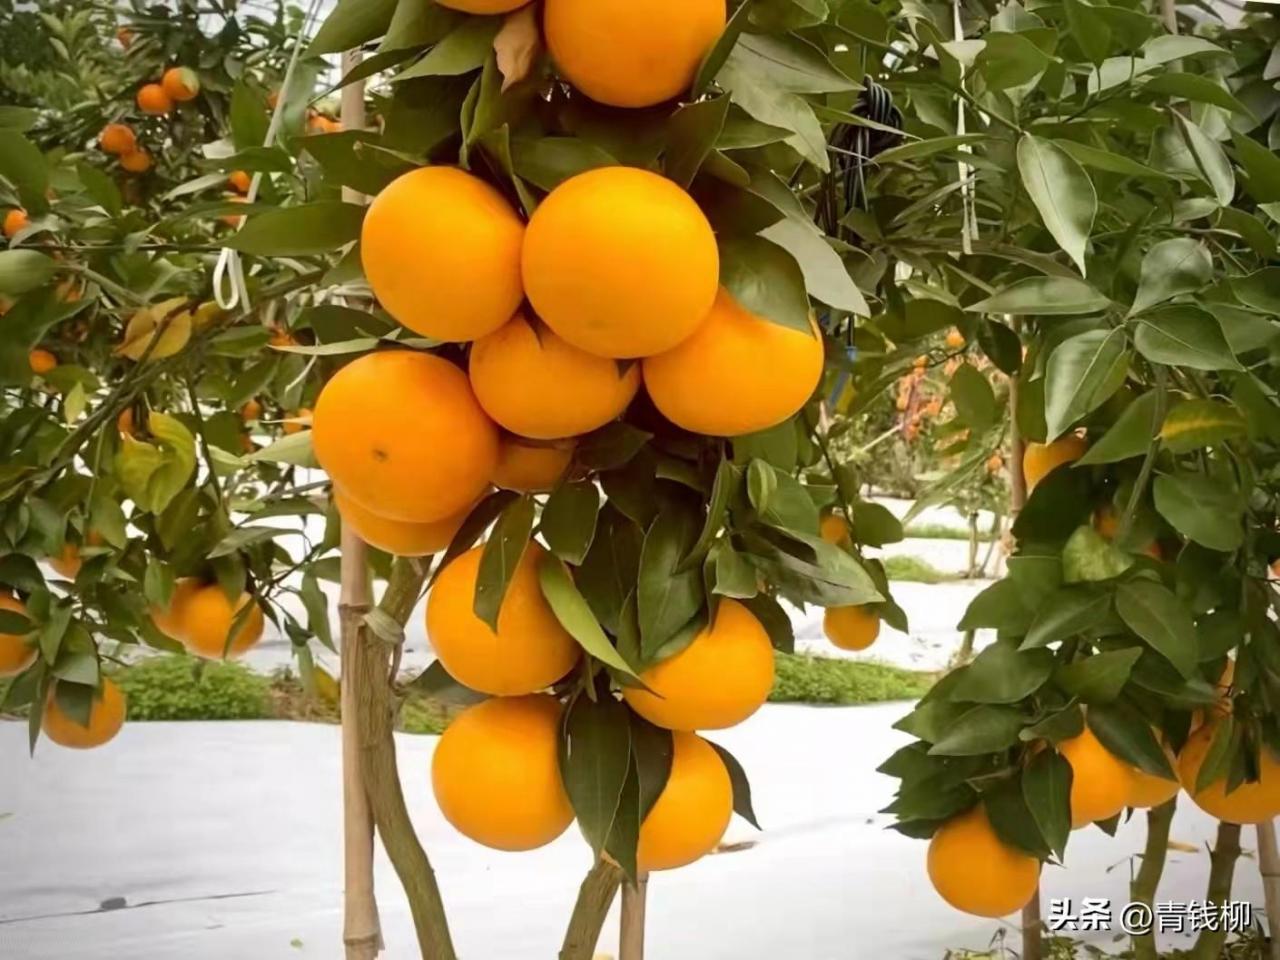 尤溪县柑橘介壳虫的发生动态及种类调查与分析，助力柑橘产业绿色发展